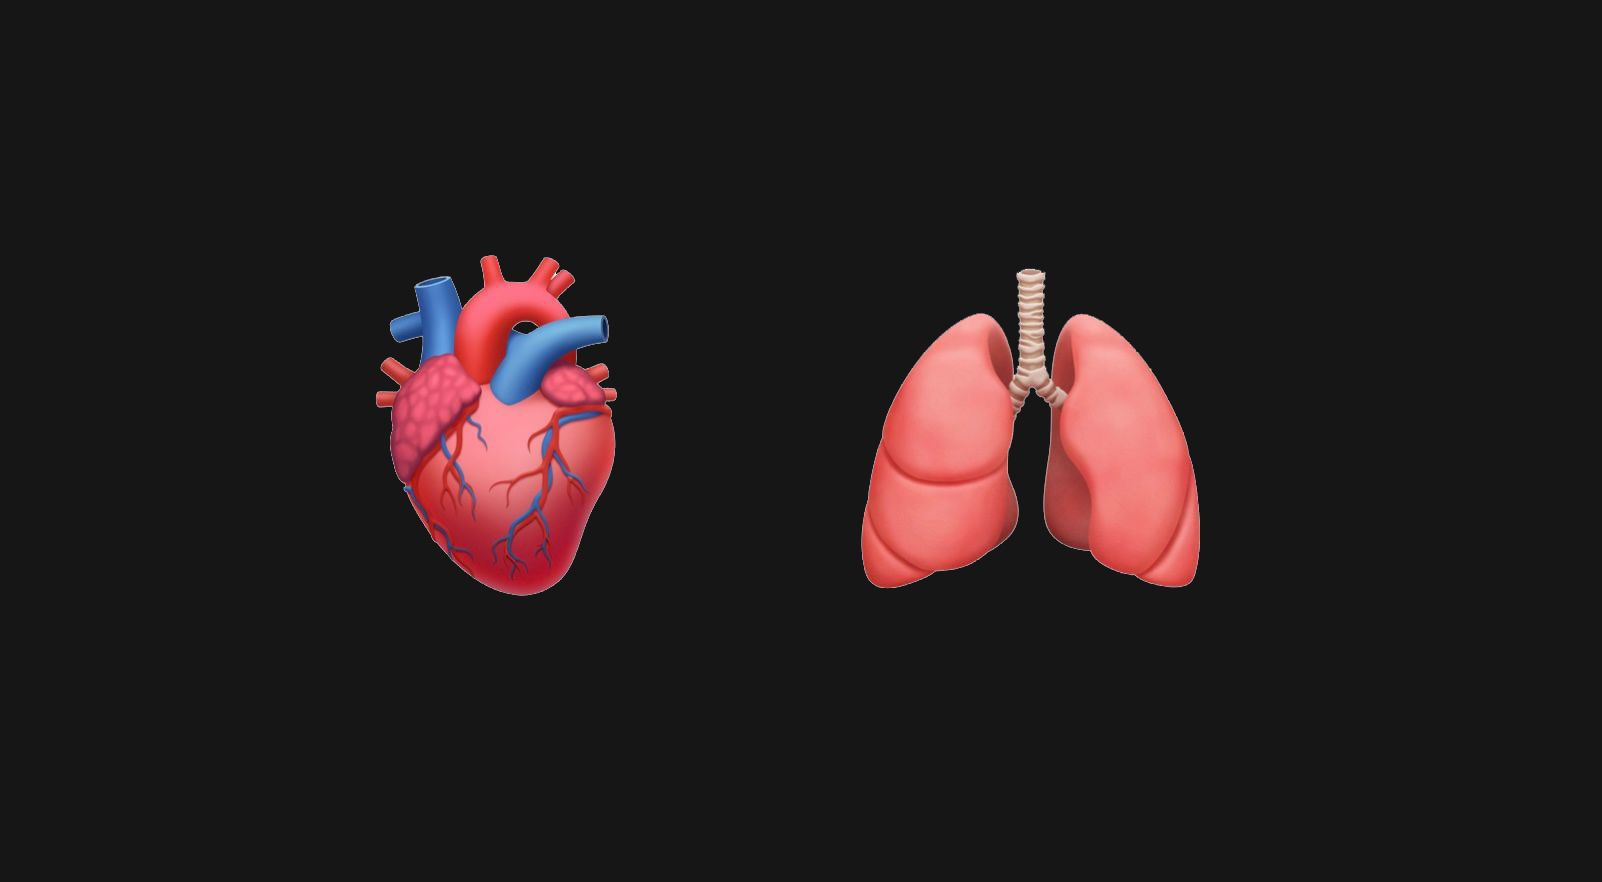 Leger og helsepersonell kan juble over realistiske versjoner av hjerte og lunger.